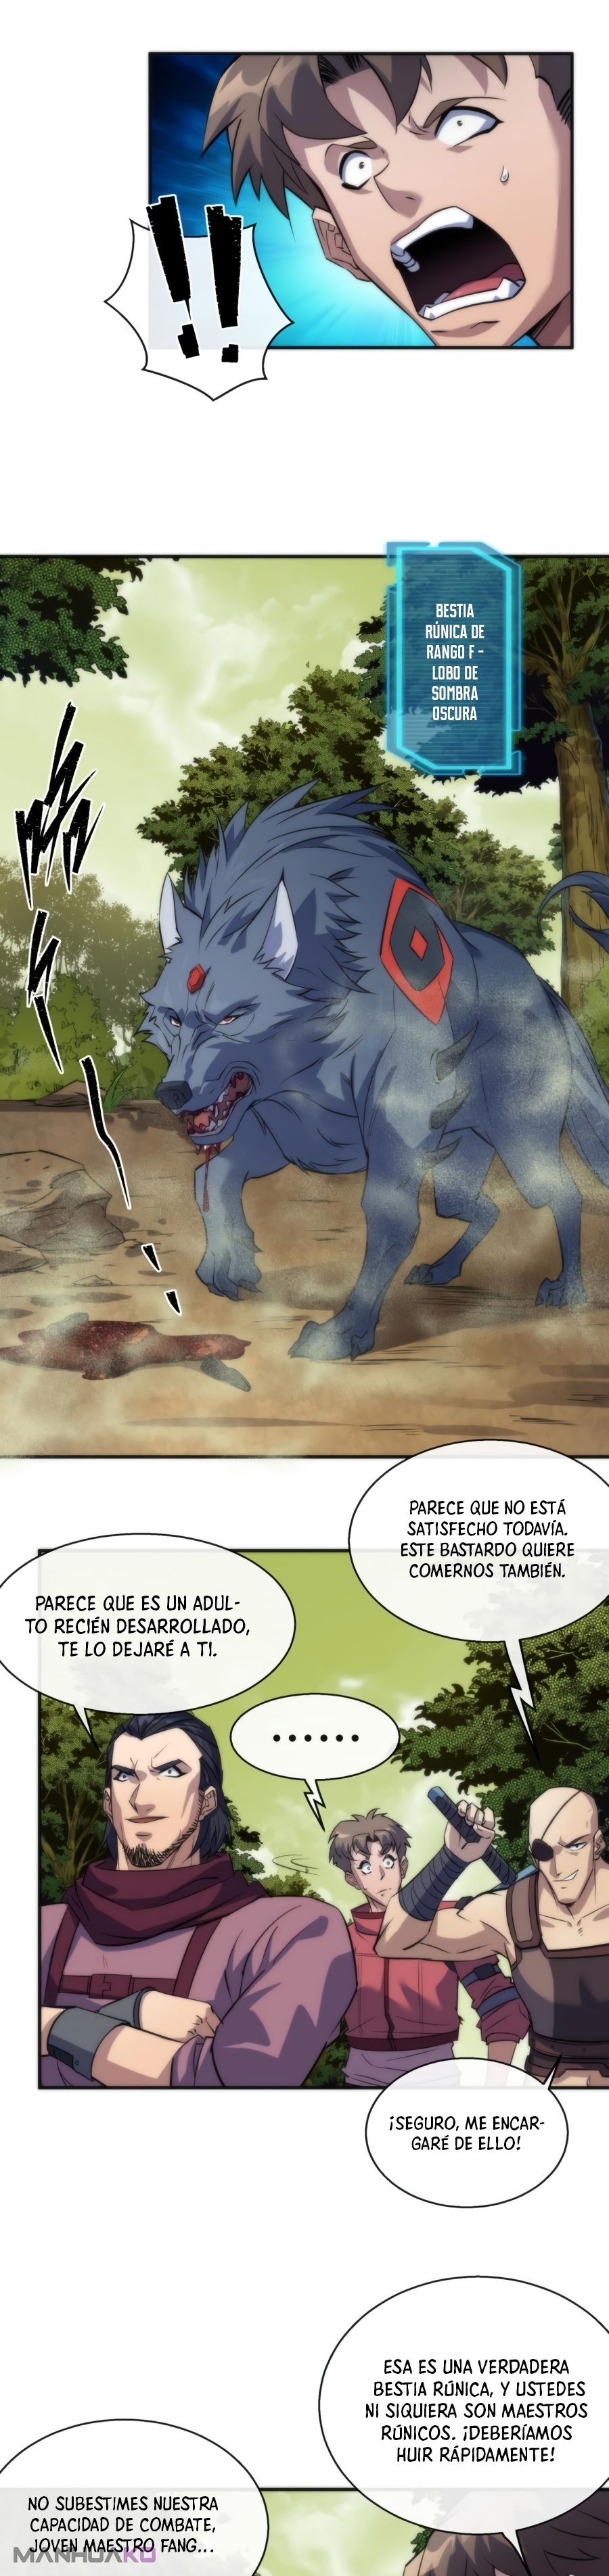 Manga Rey de las runas Chapter 19 image number 9